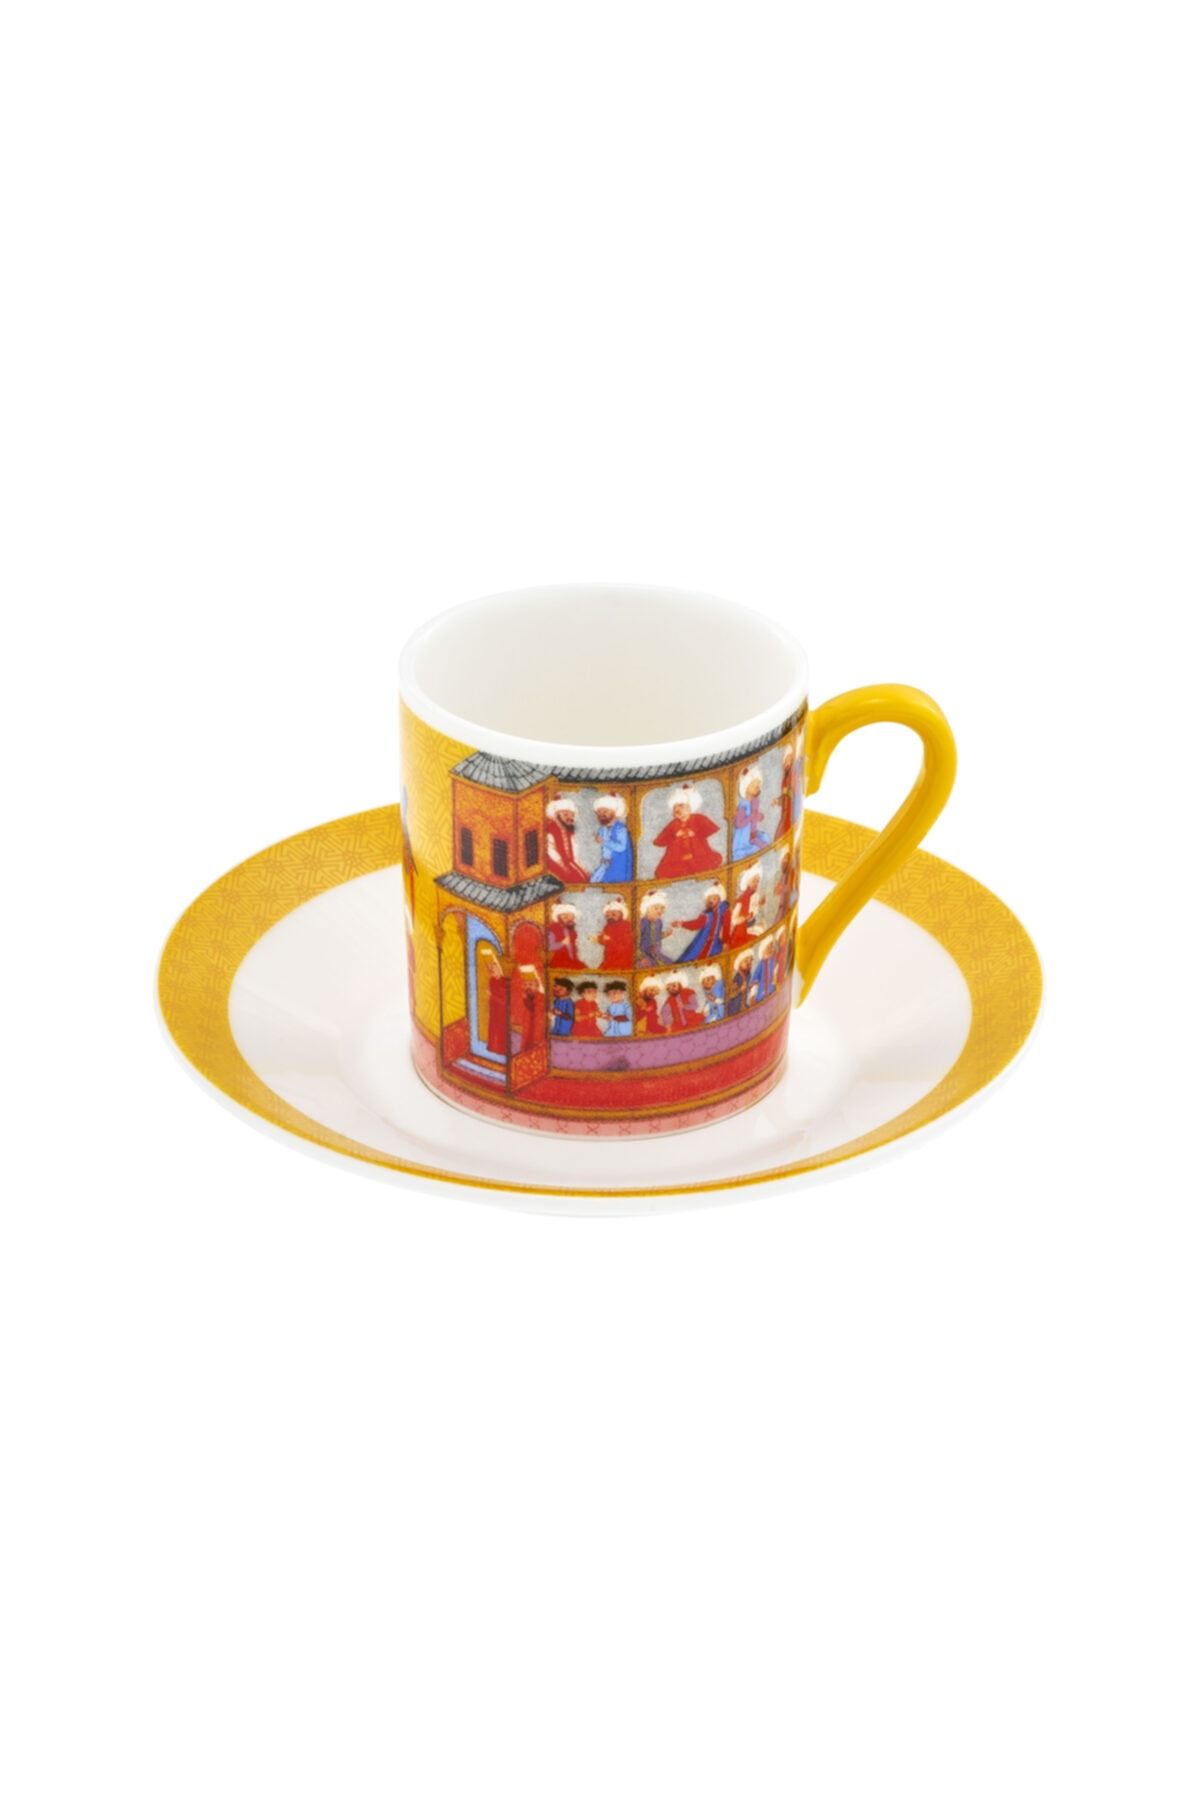 MÜZEDENAL Sarı Kahve Fincanı Minyatür Koleksiyonu